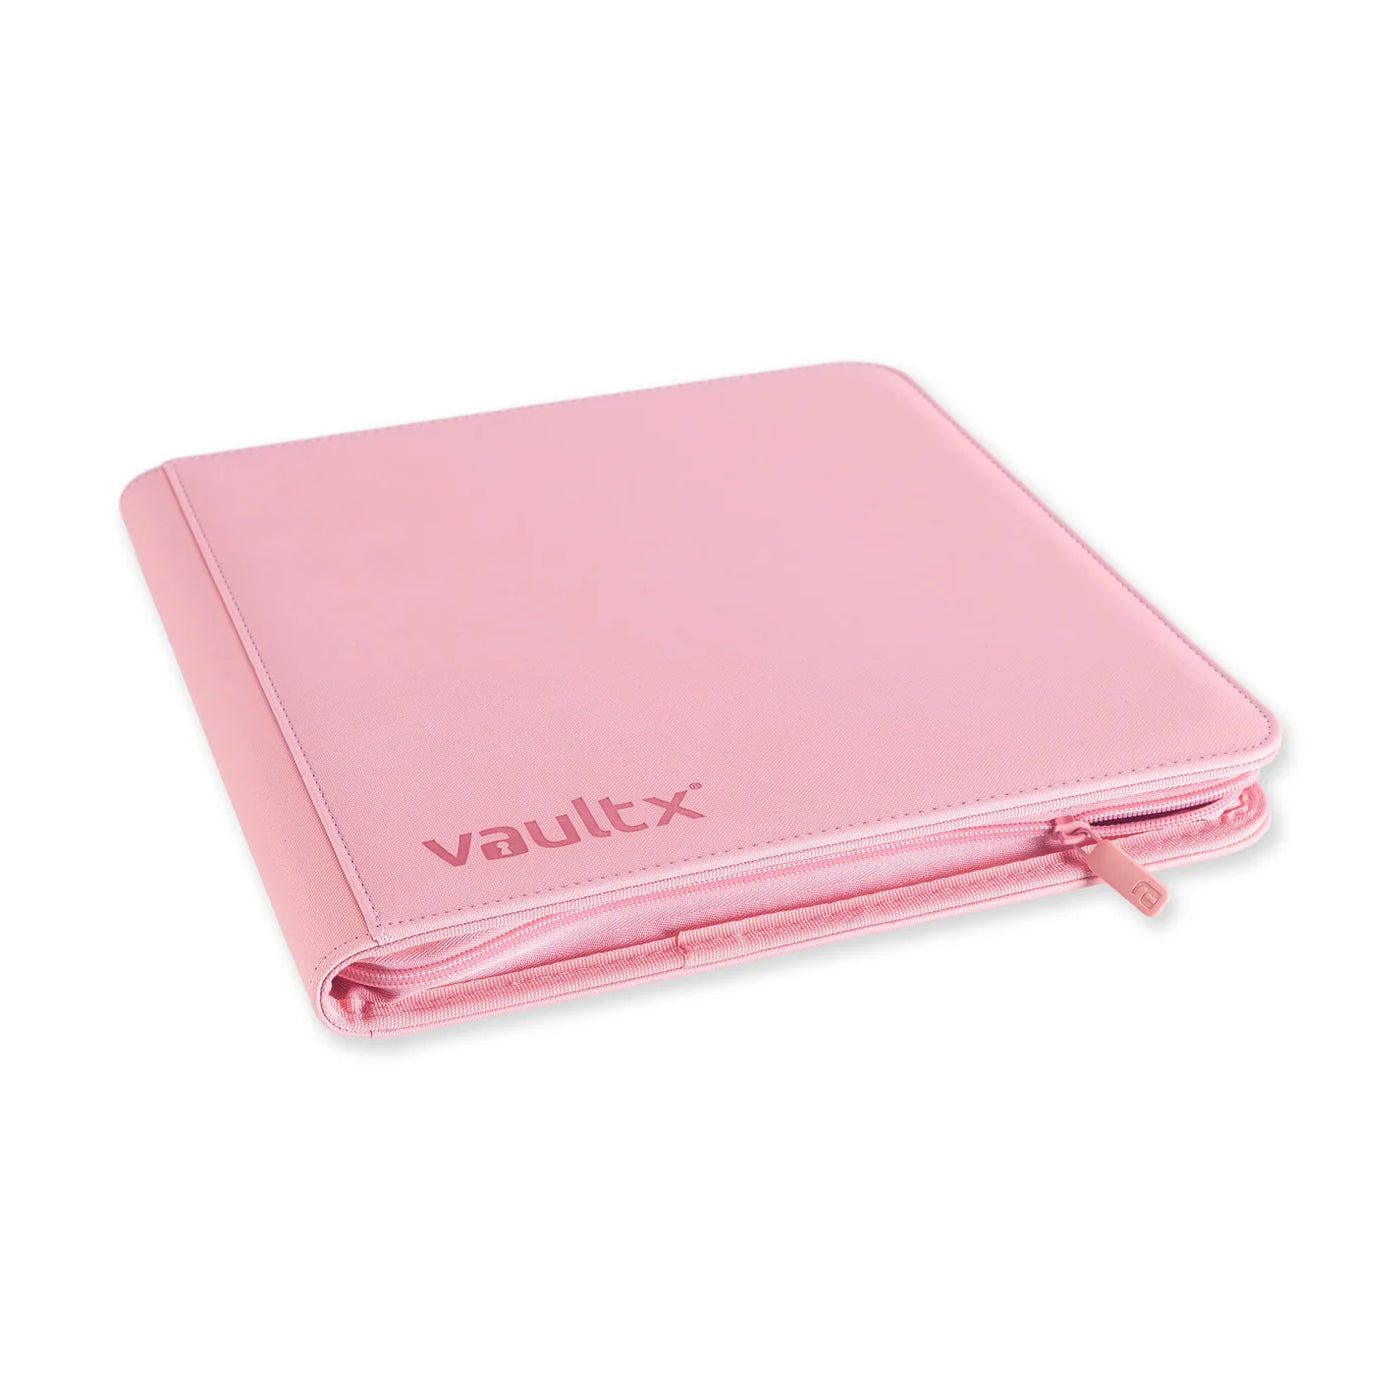 Vault X Exo-Tec Zip Binder 12-Pocket Just Pink